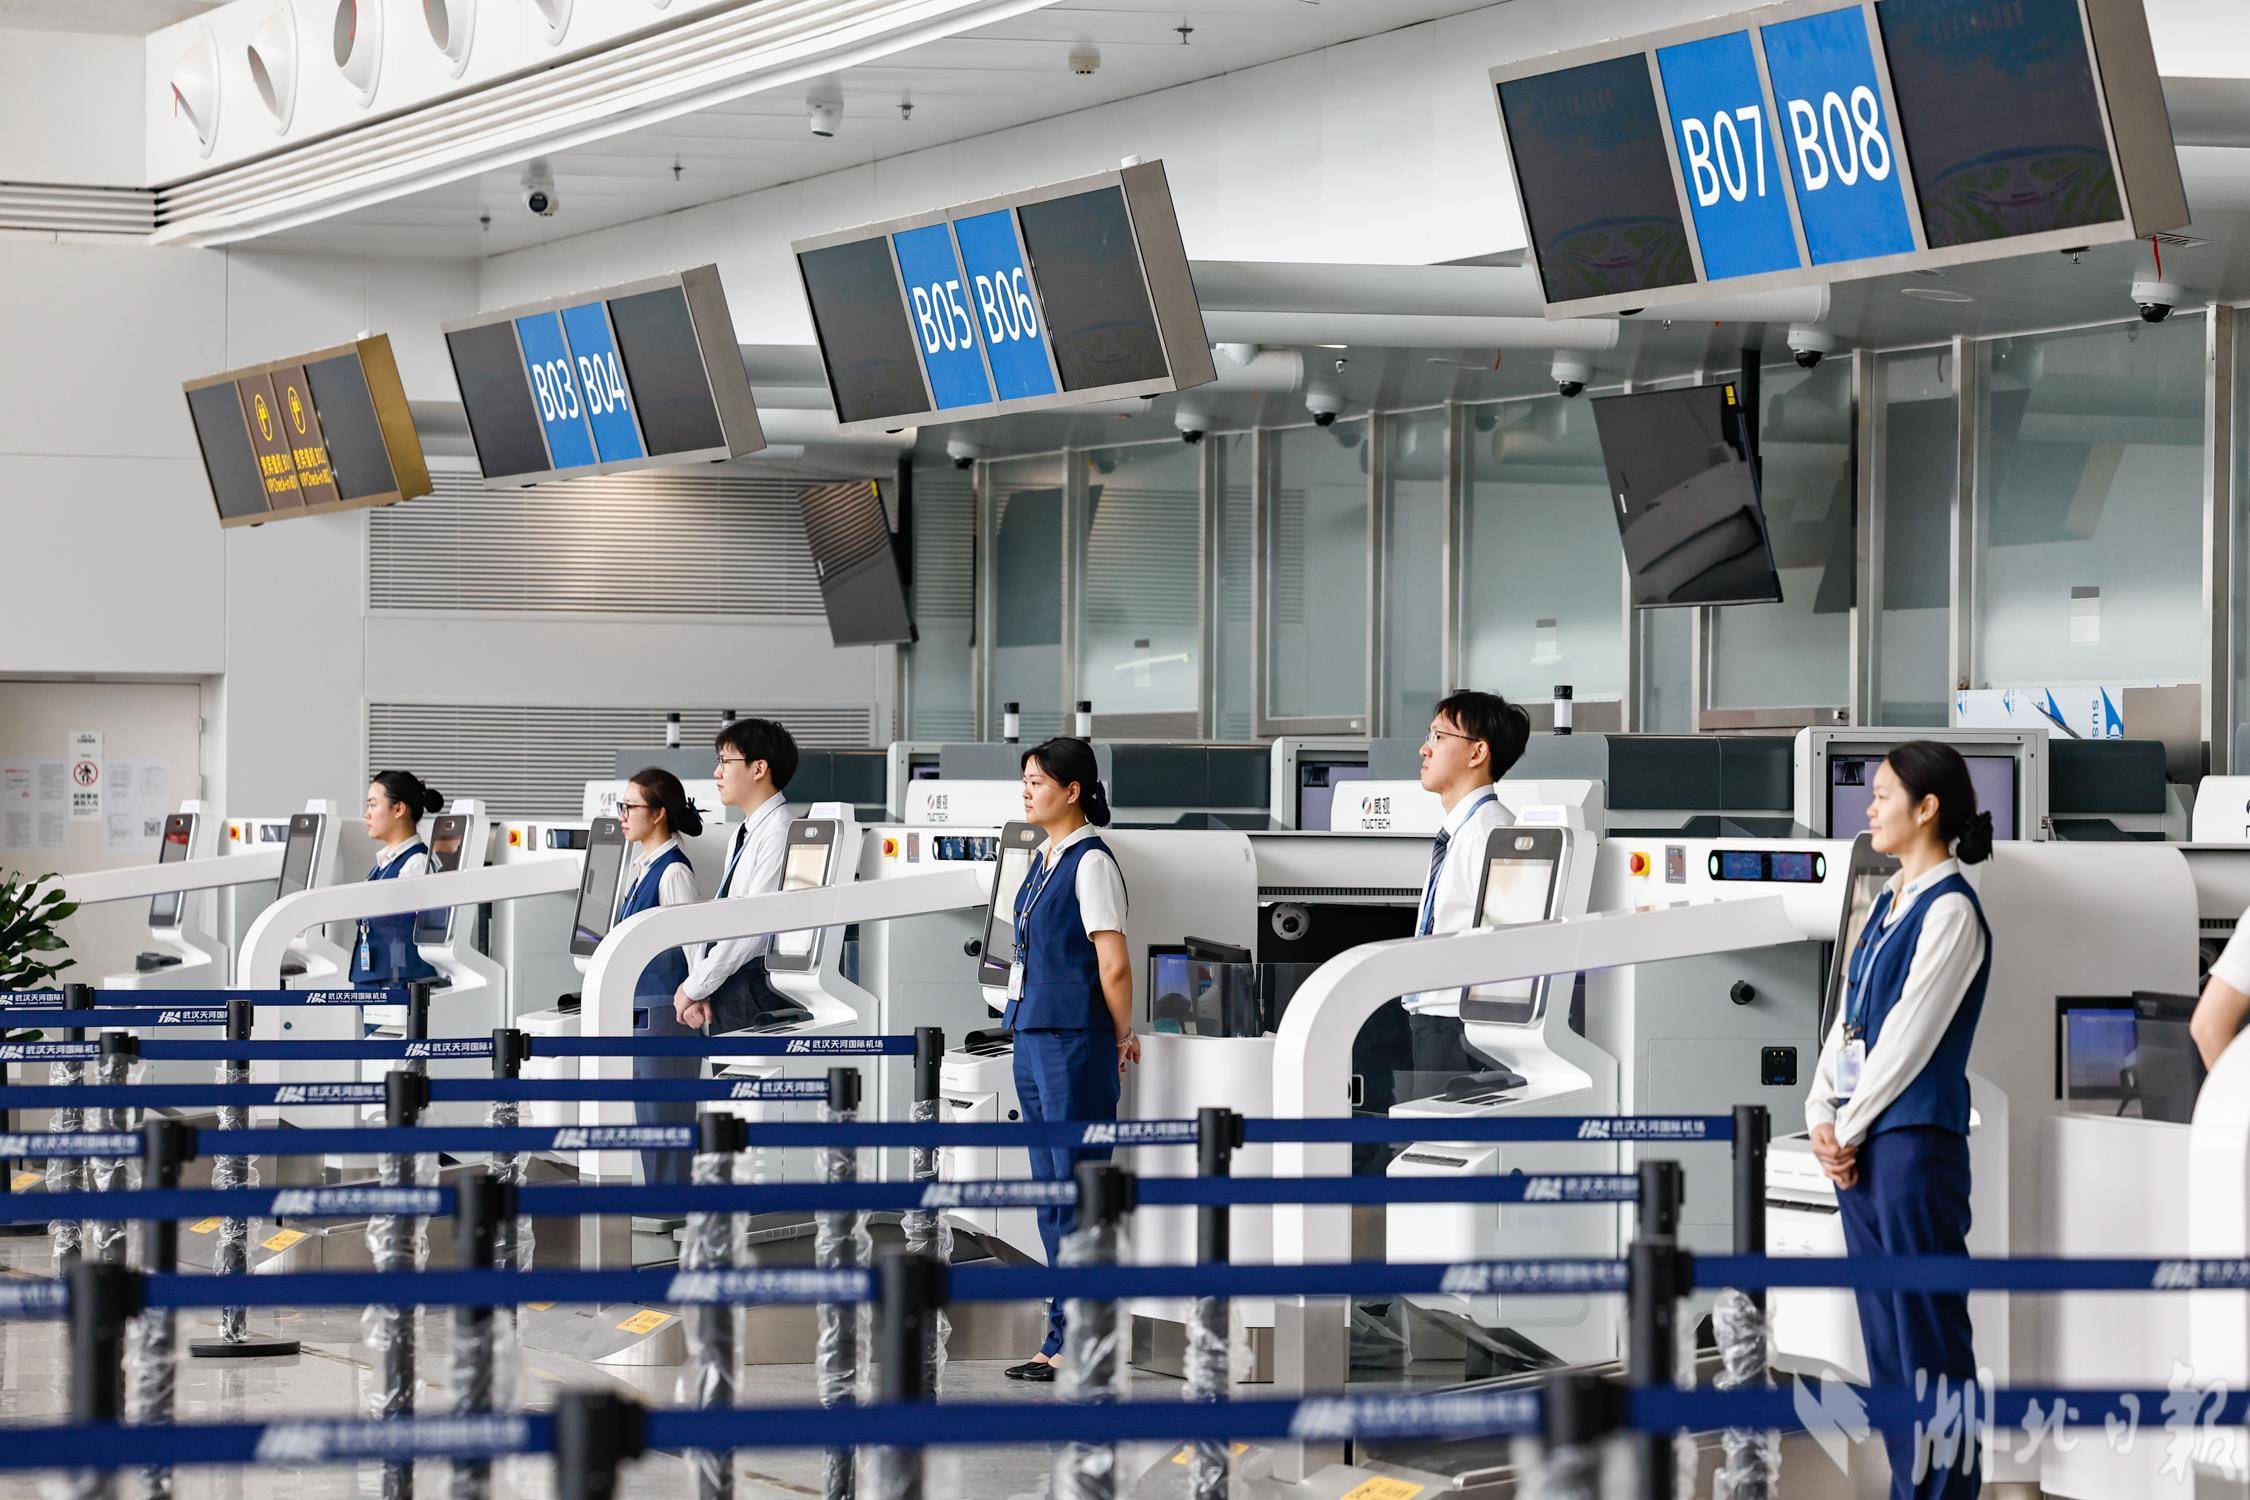 武汉天河机场t2航站楼即将恢复启用